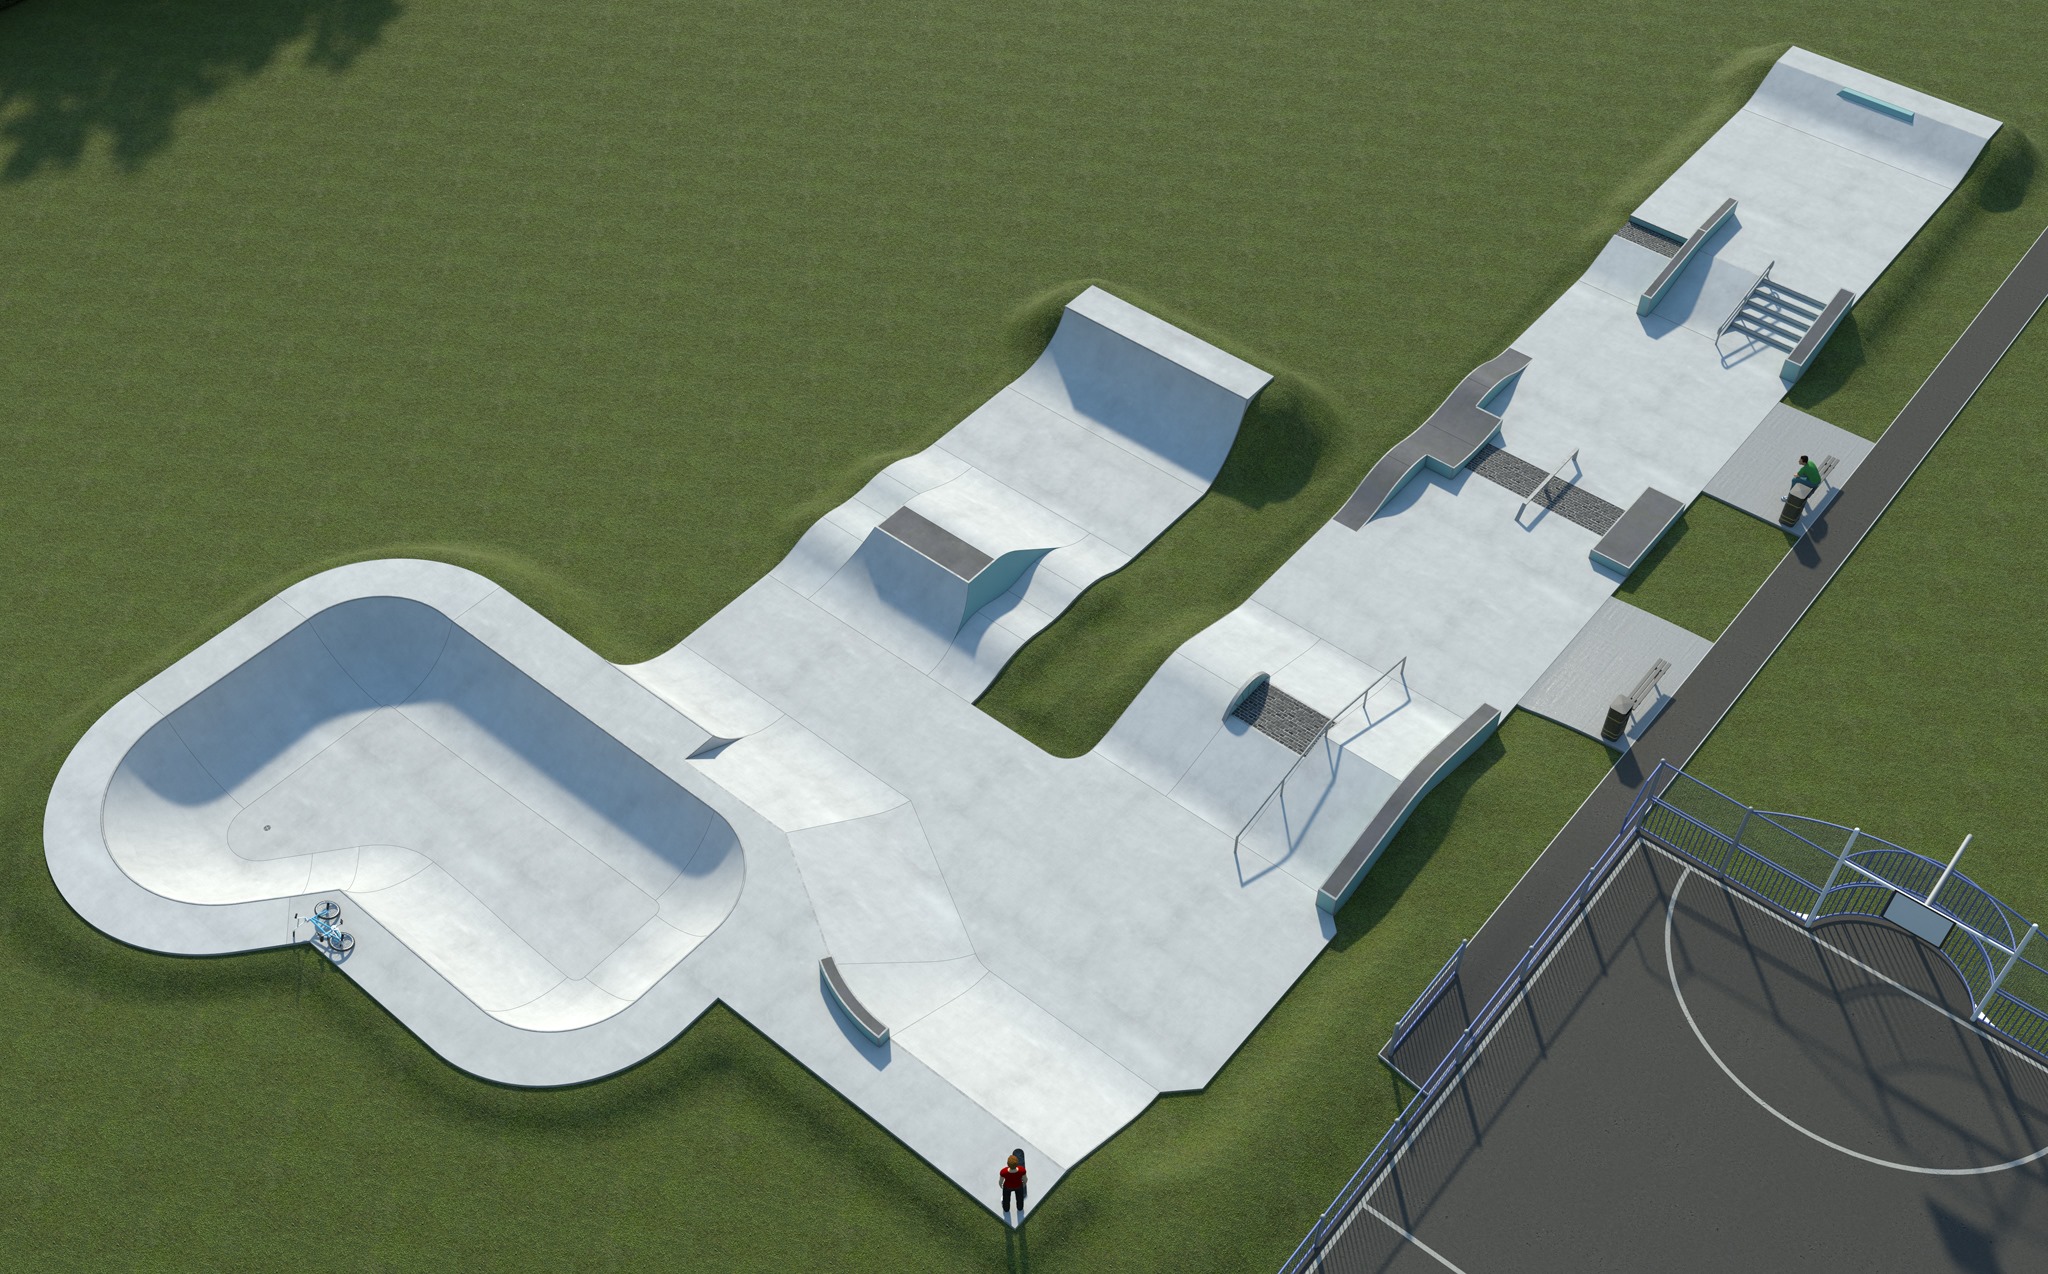 kie park skatepark whitehaven review tips skateboarding in cumbria u k